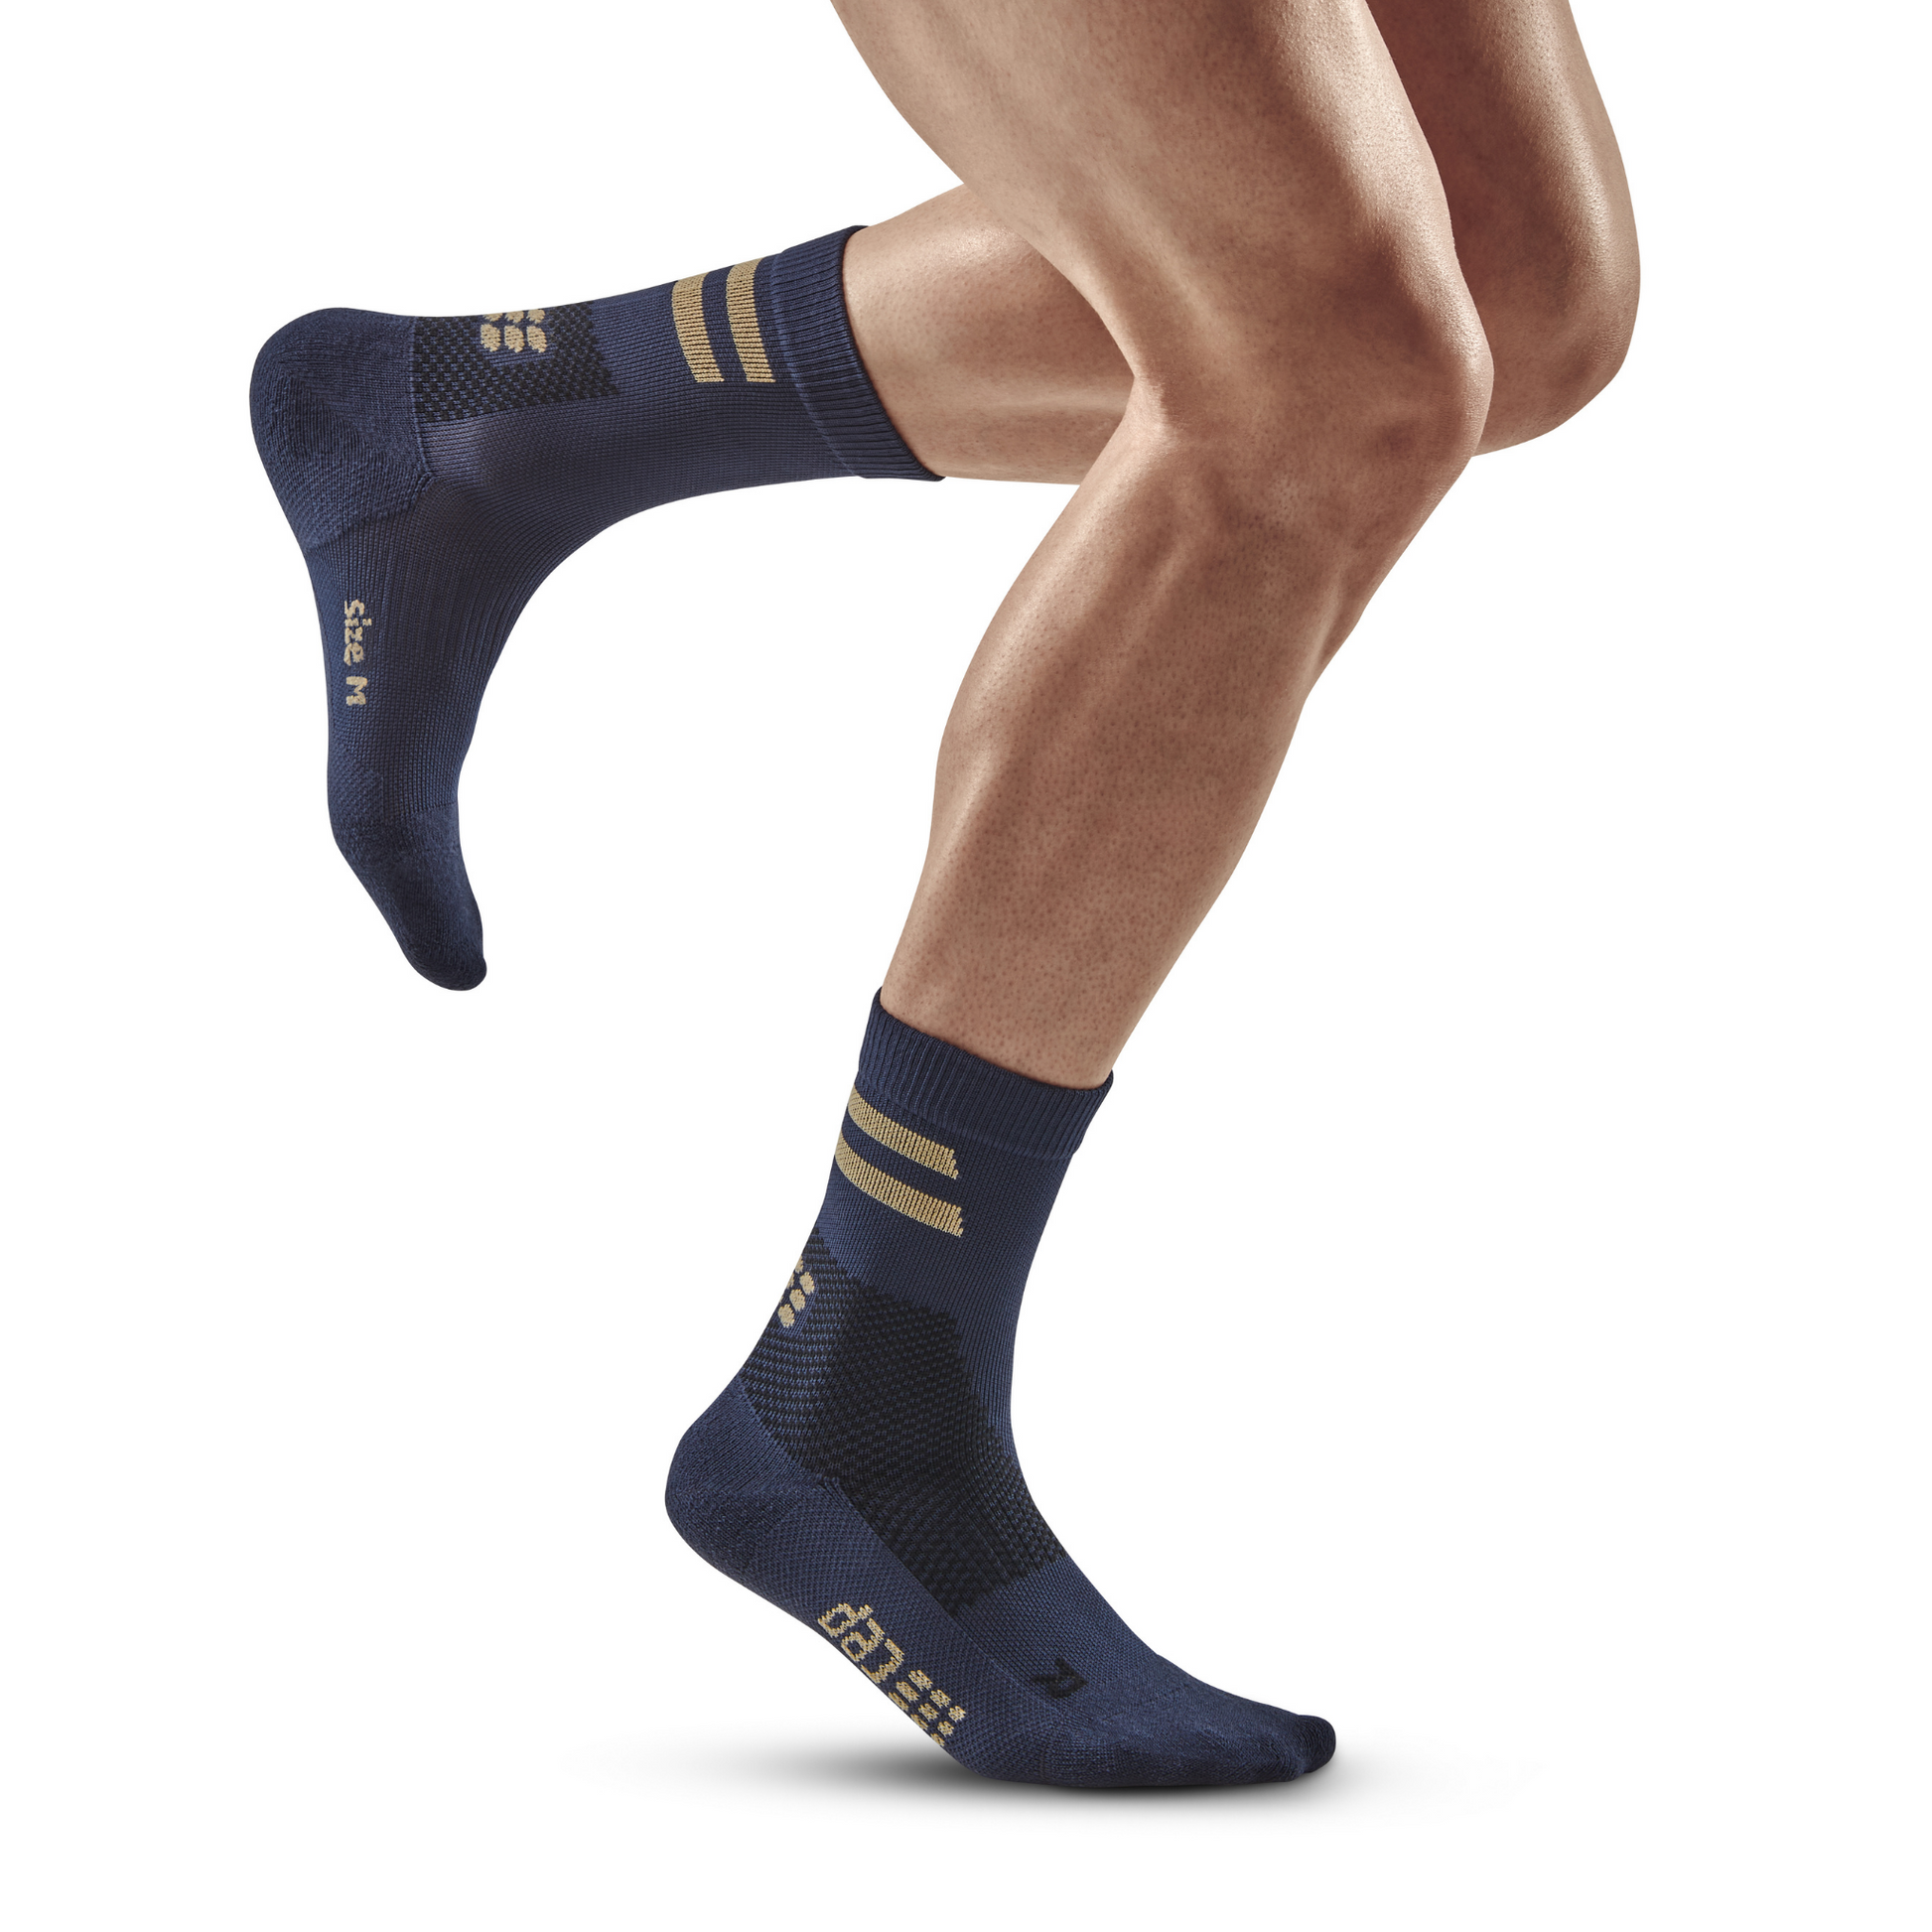 CEP The Run Compression Socks Men